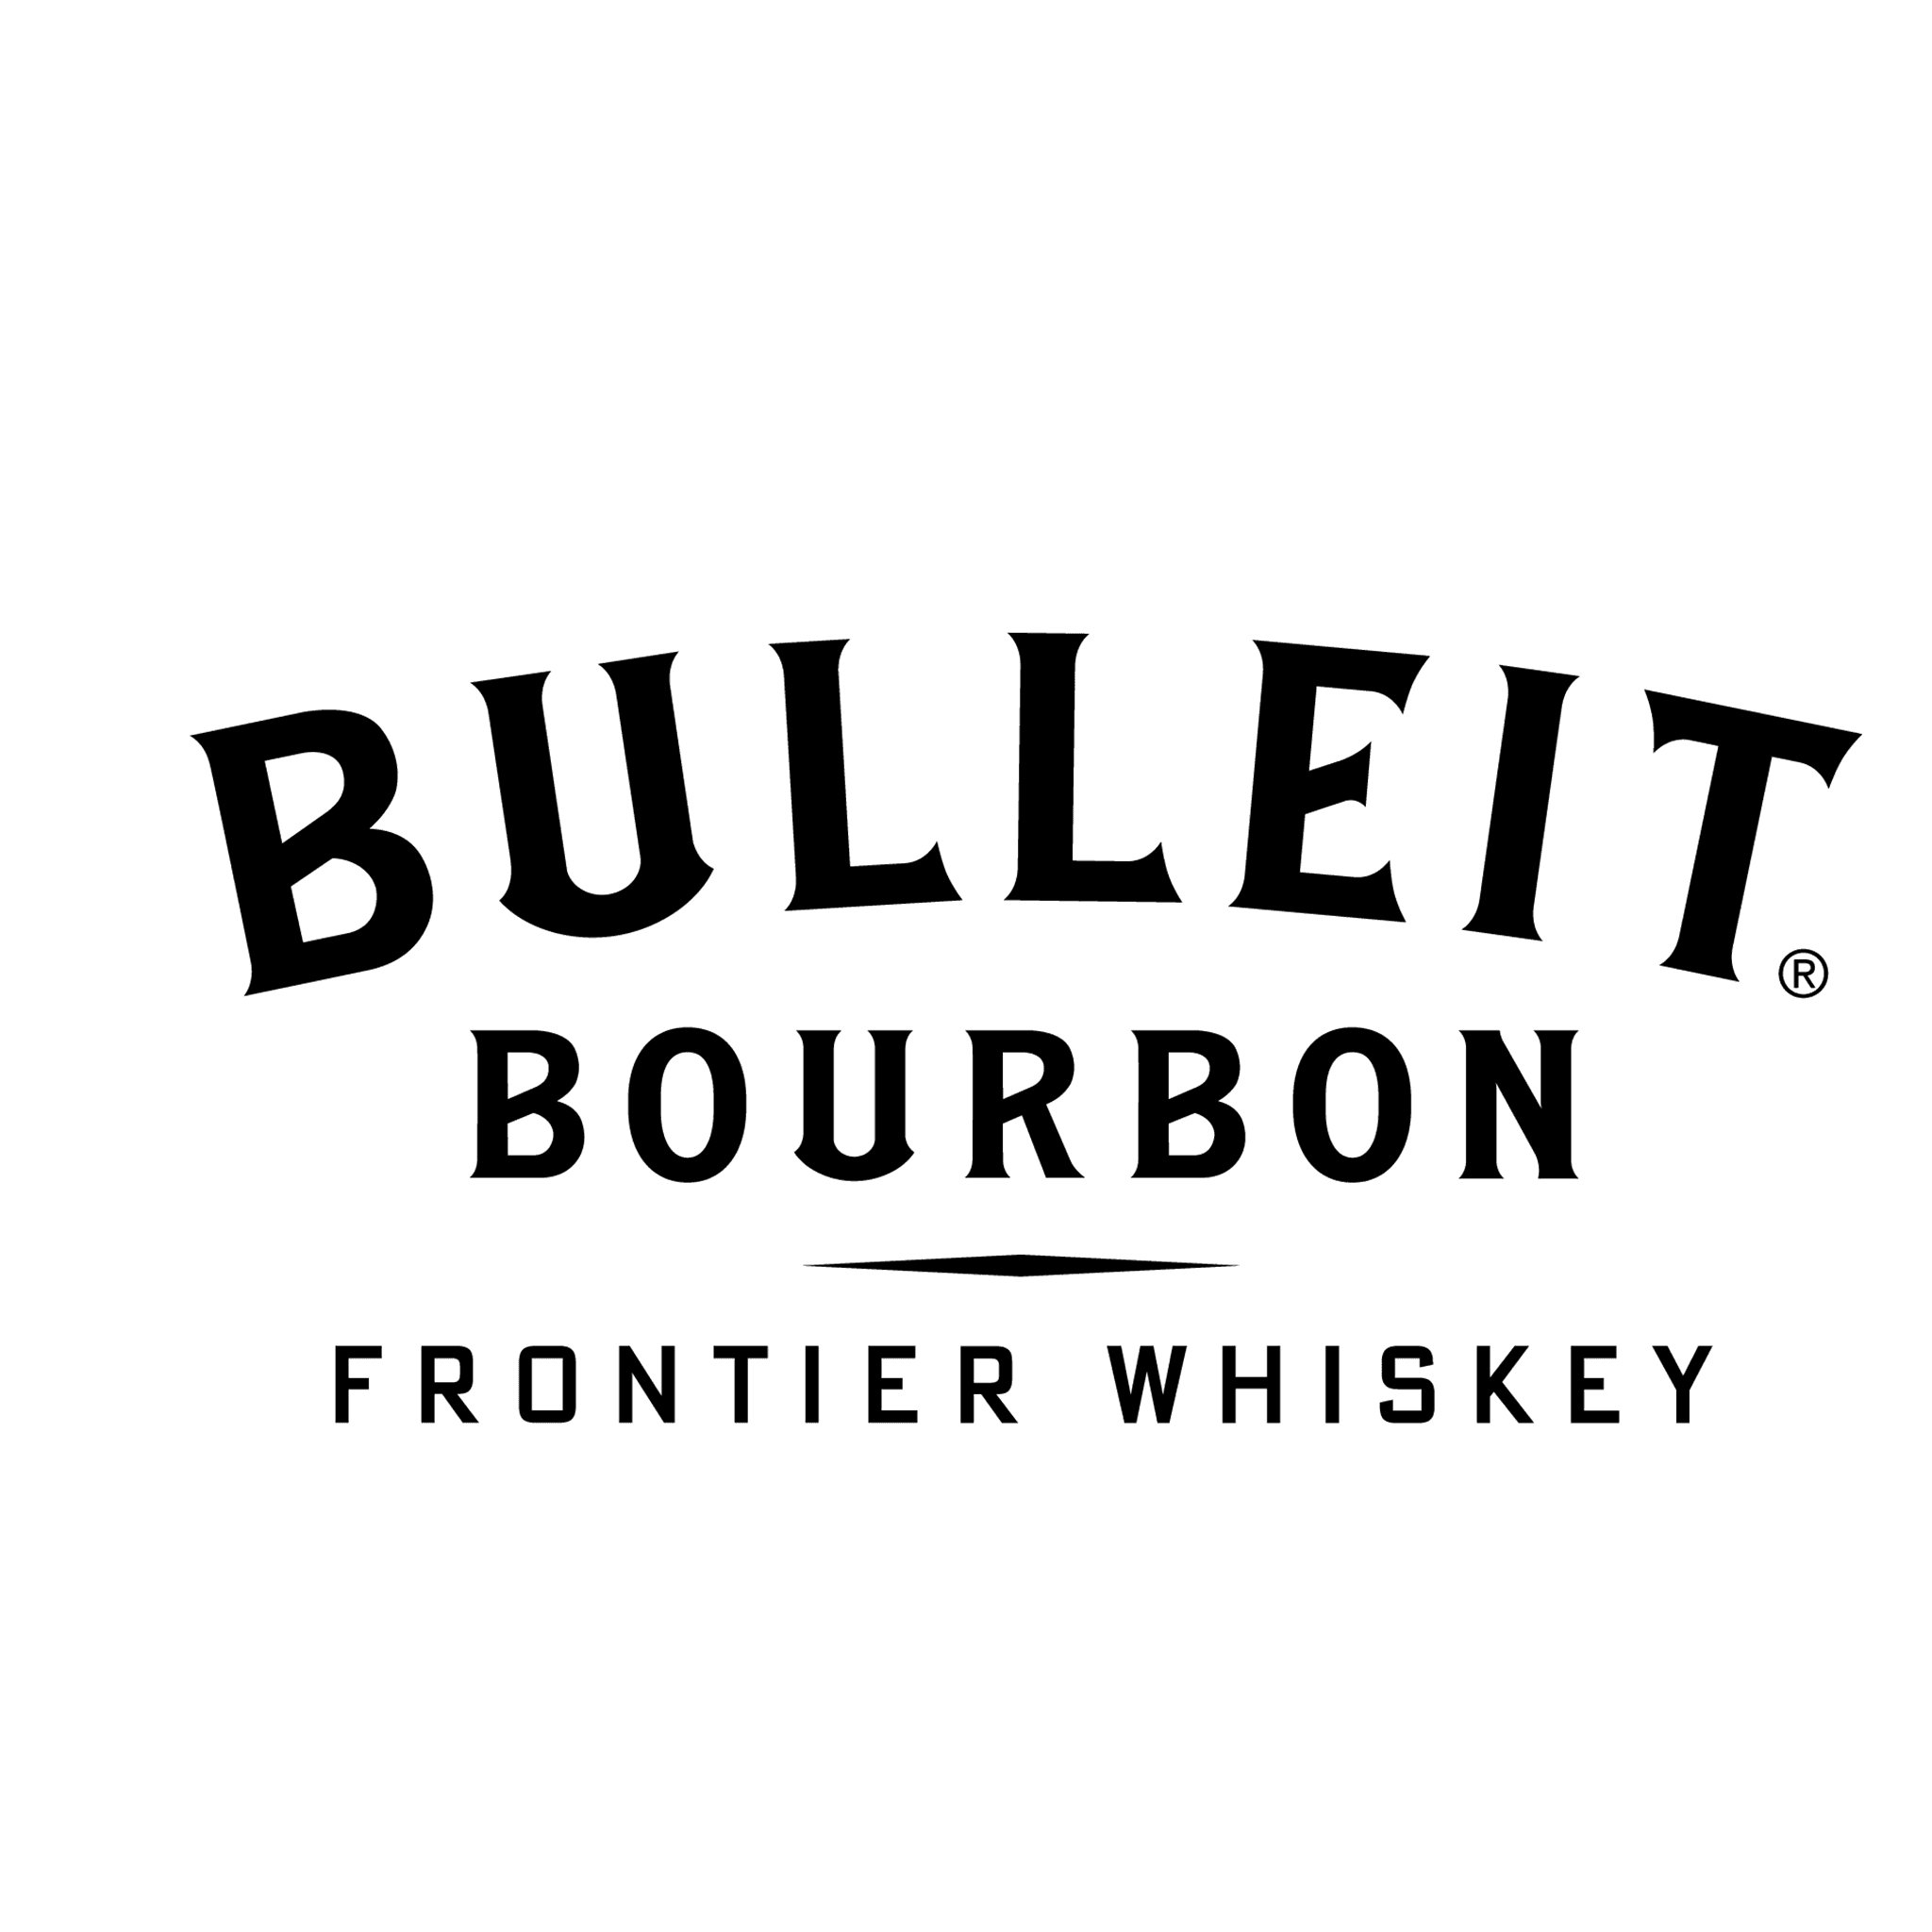 Bulleit-Bourbon-logo.png